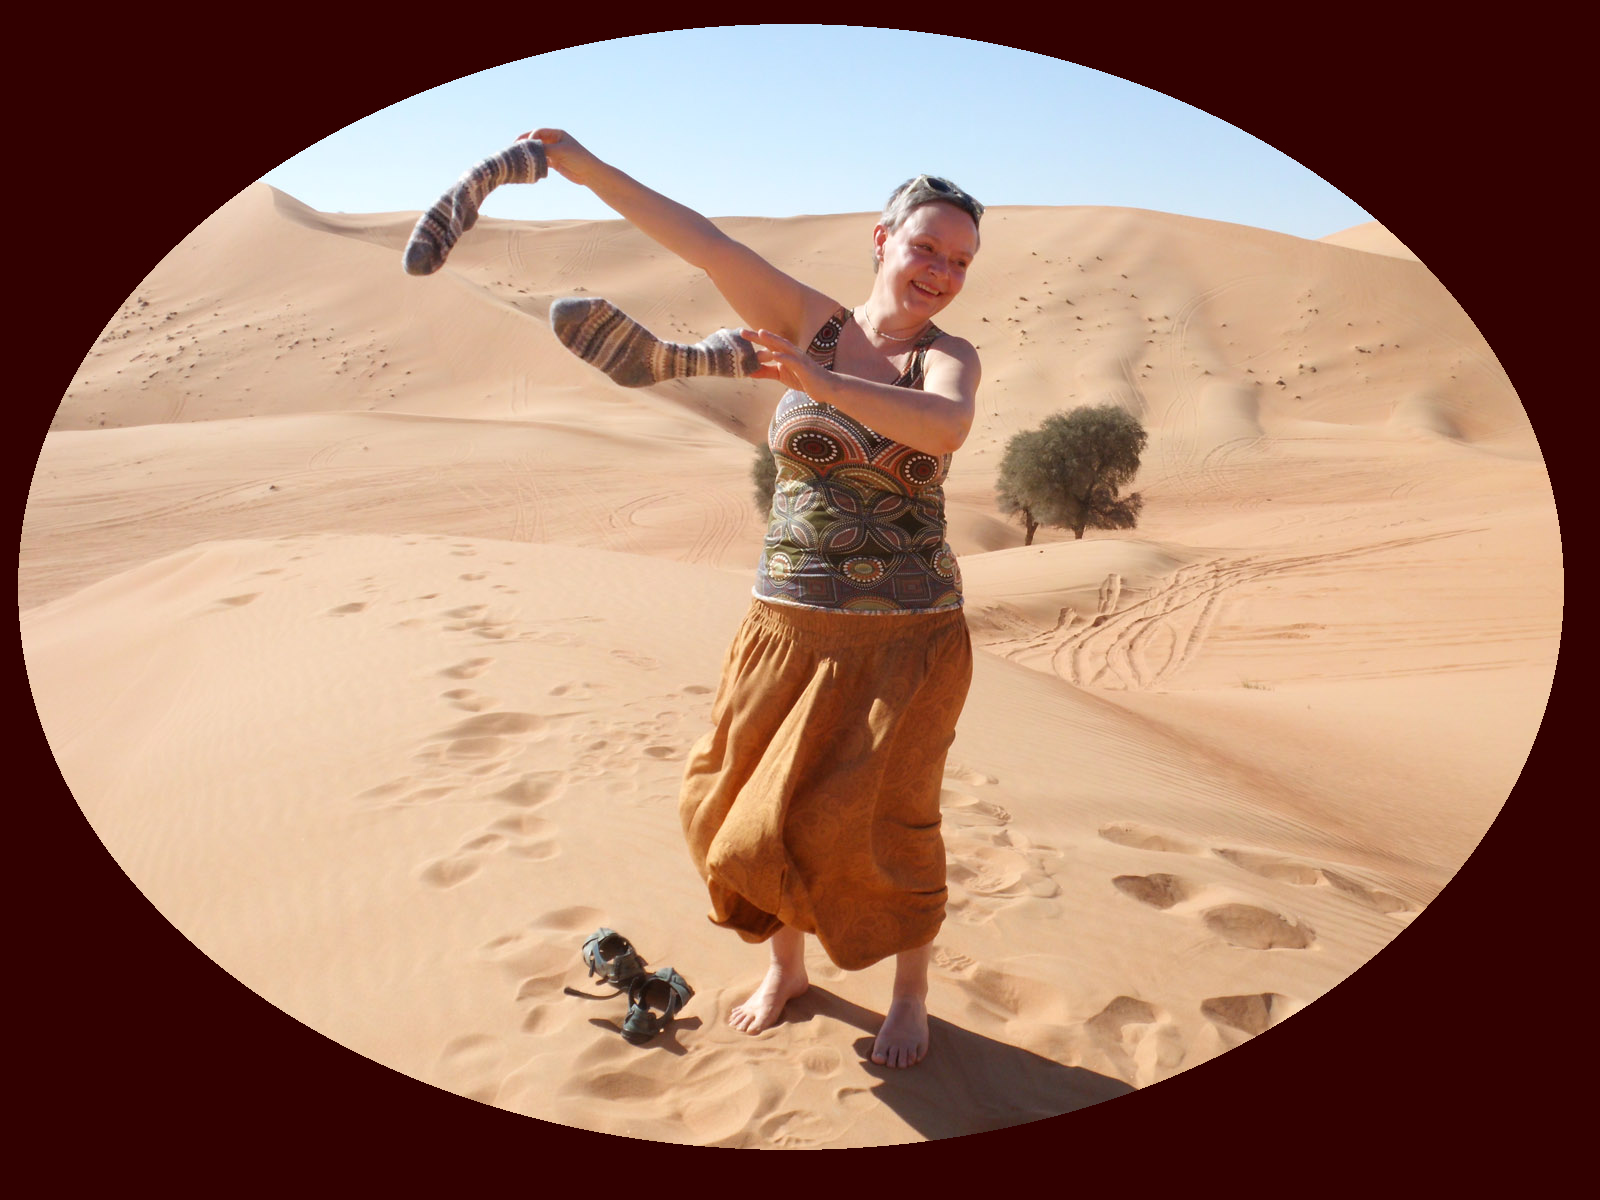 Sabine tanzt in der arabischen Wüste